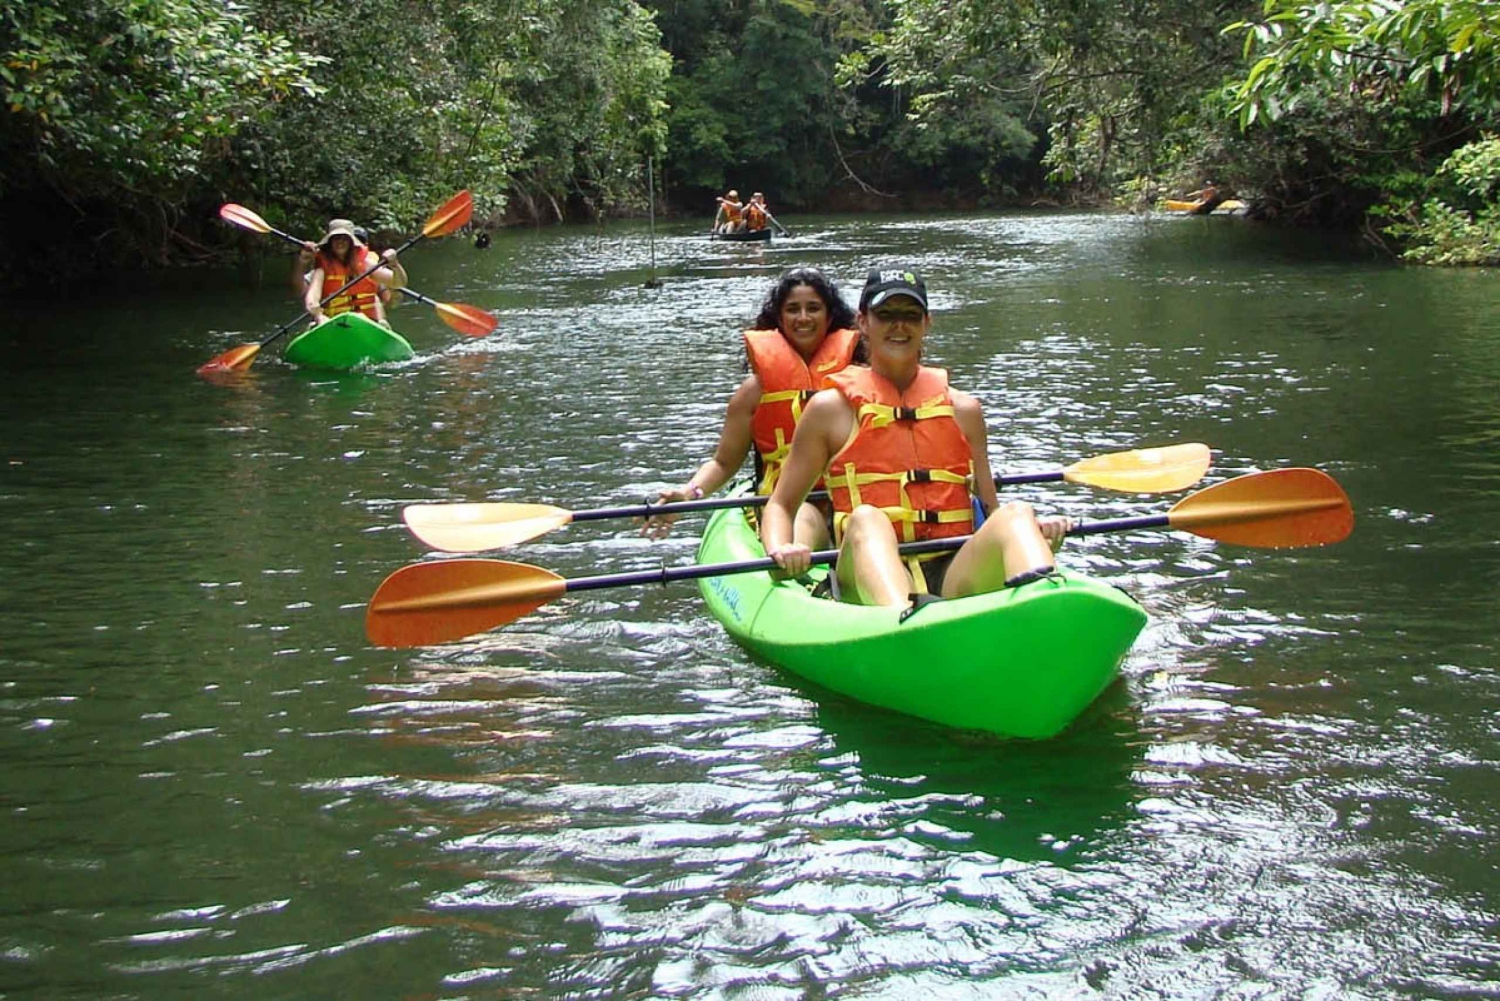 Rio Chagres: Gatun Lake Kayaking Tour